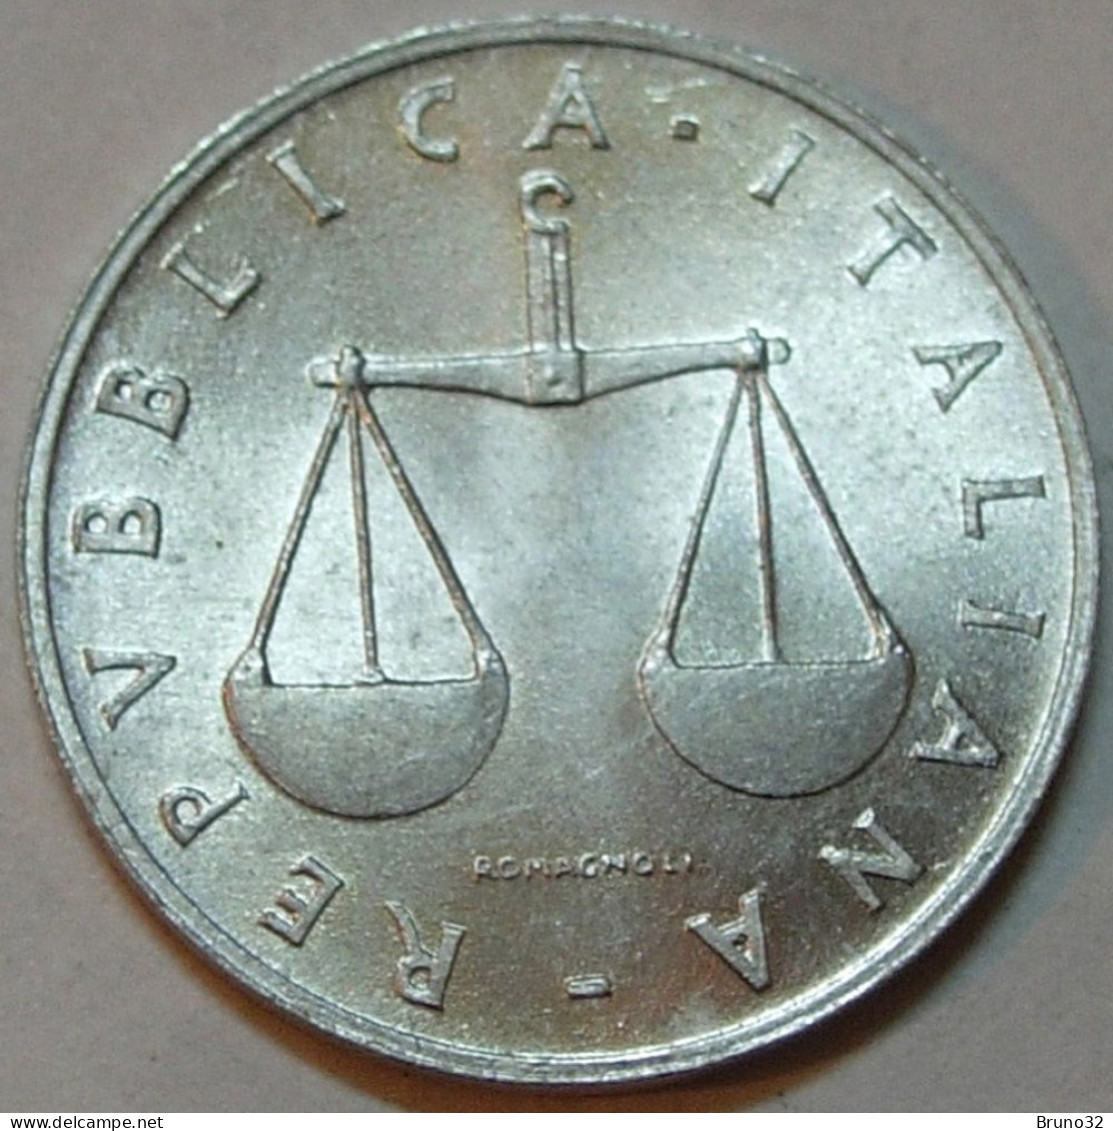 ITALIA - Lire 1 1955 - FDC/Unc Da Rotolino/from Roll 1 Moneta/1 Coin - 1 Lira